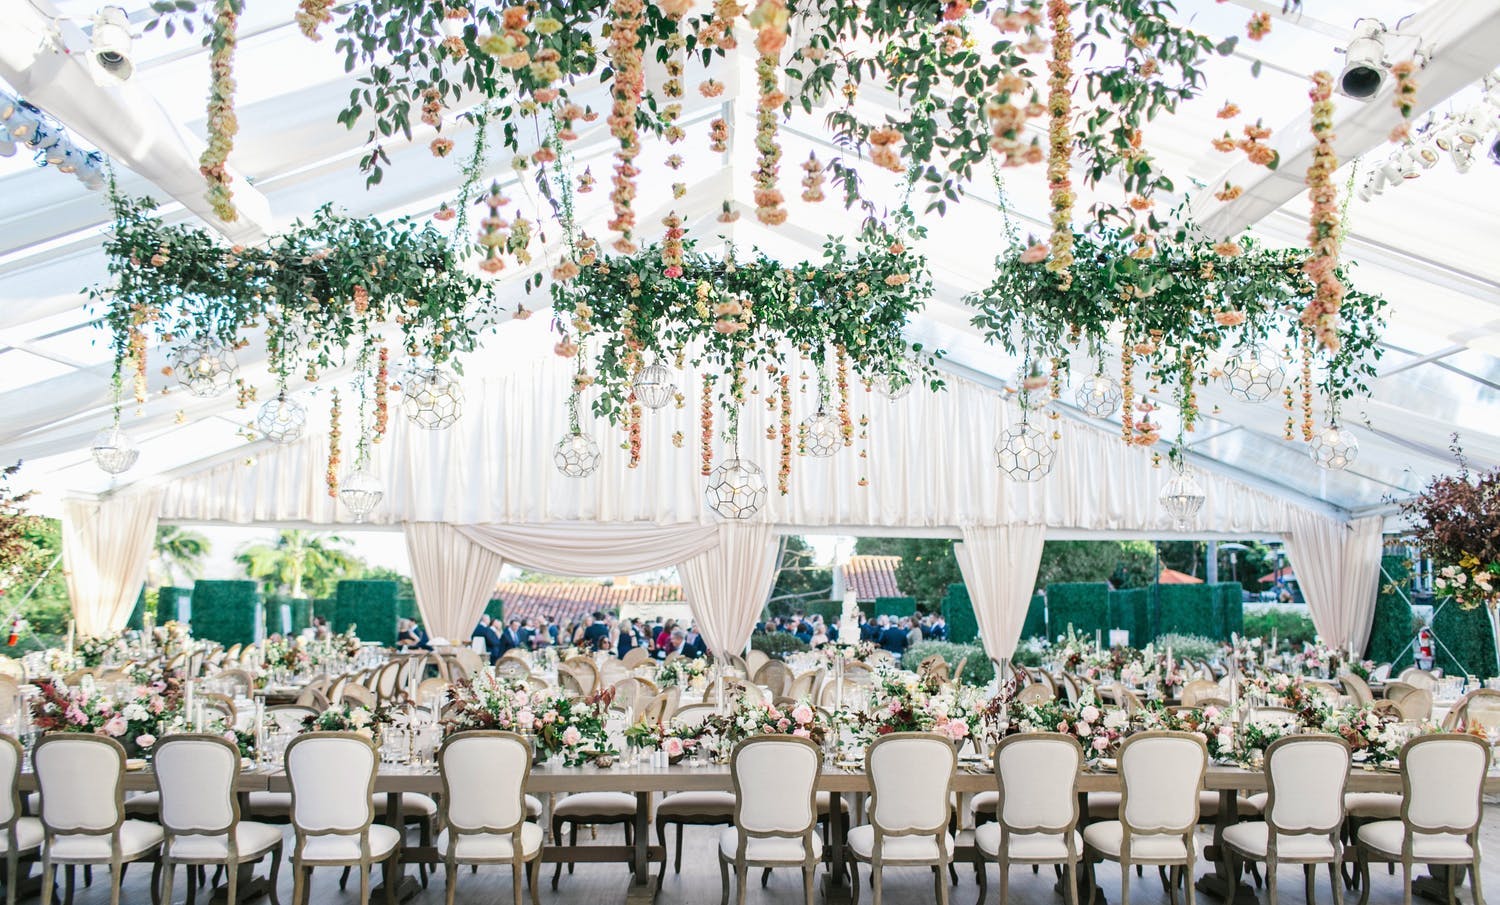 Ceiling Wedding Decor | Wedding Ceiling Decor Flowers | Wedding Ceiling  Lights